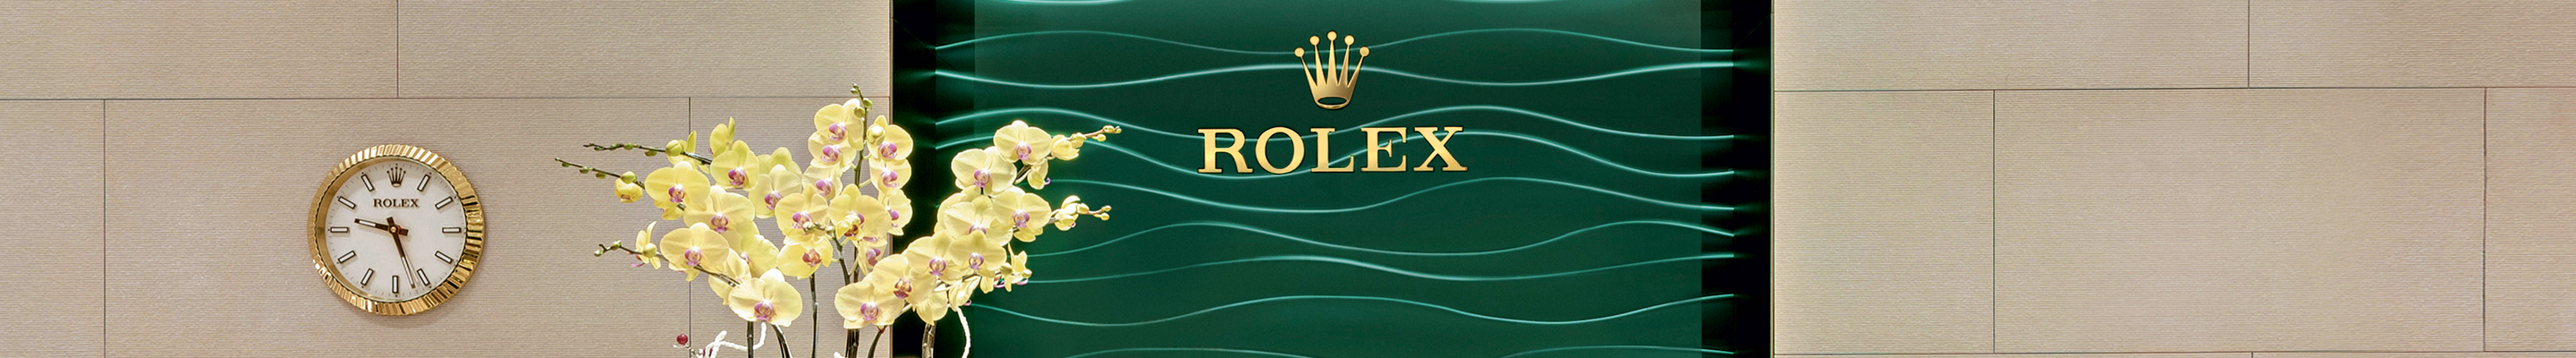 Heller Rolex Showroom in California